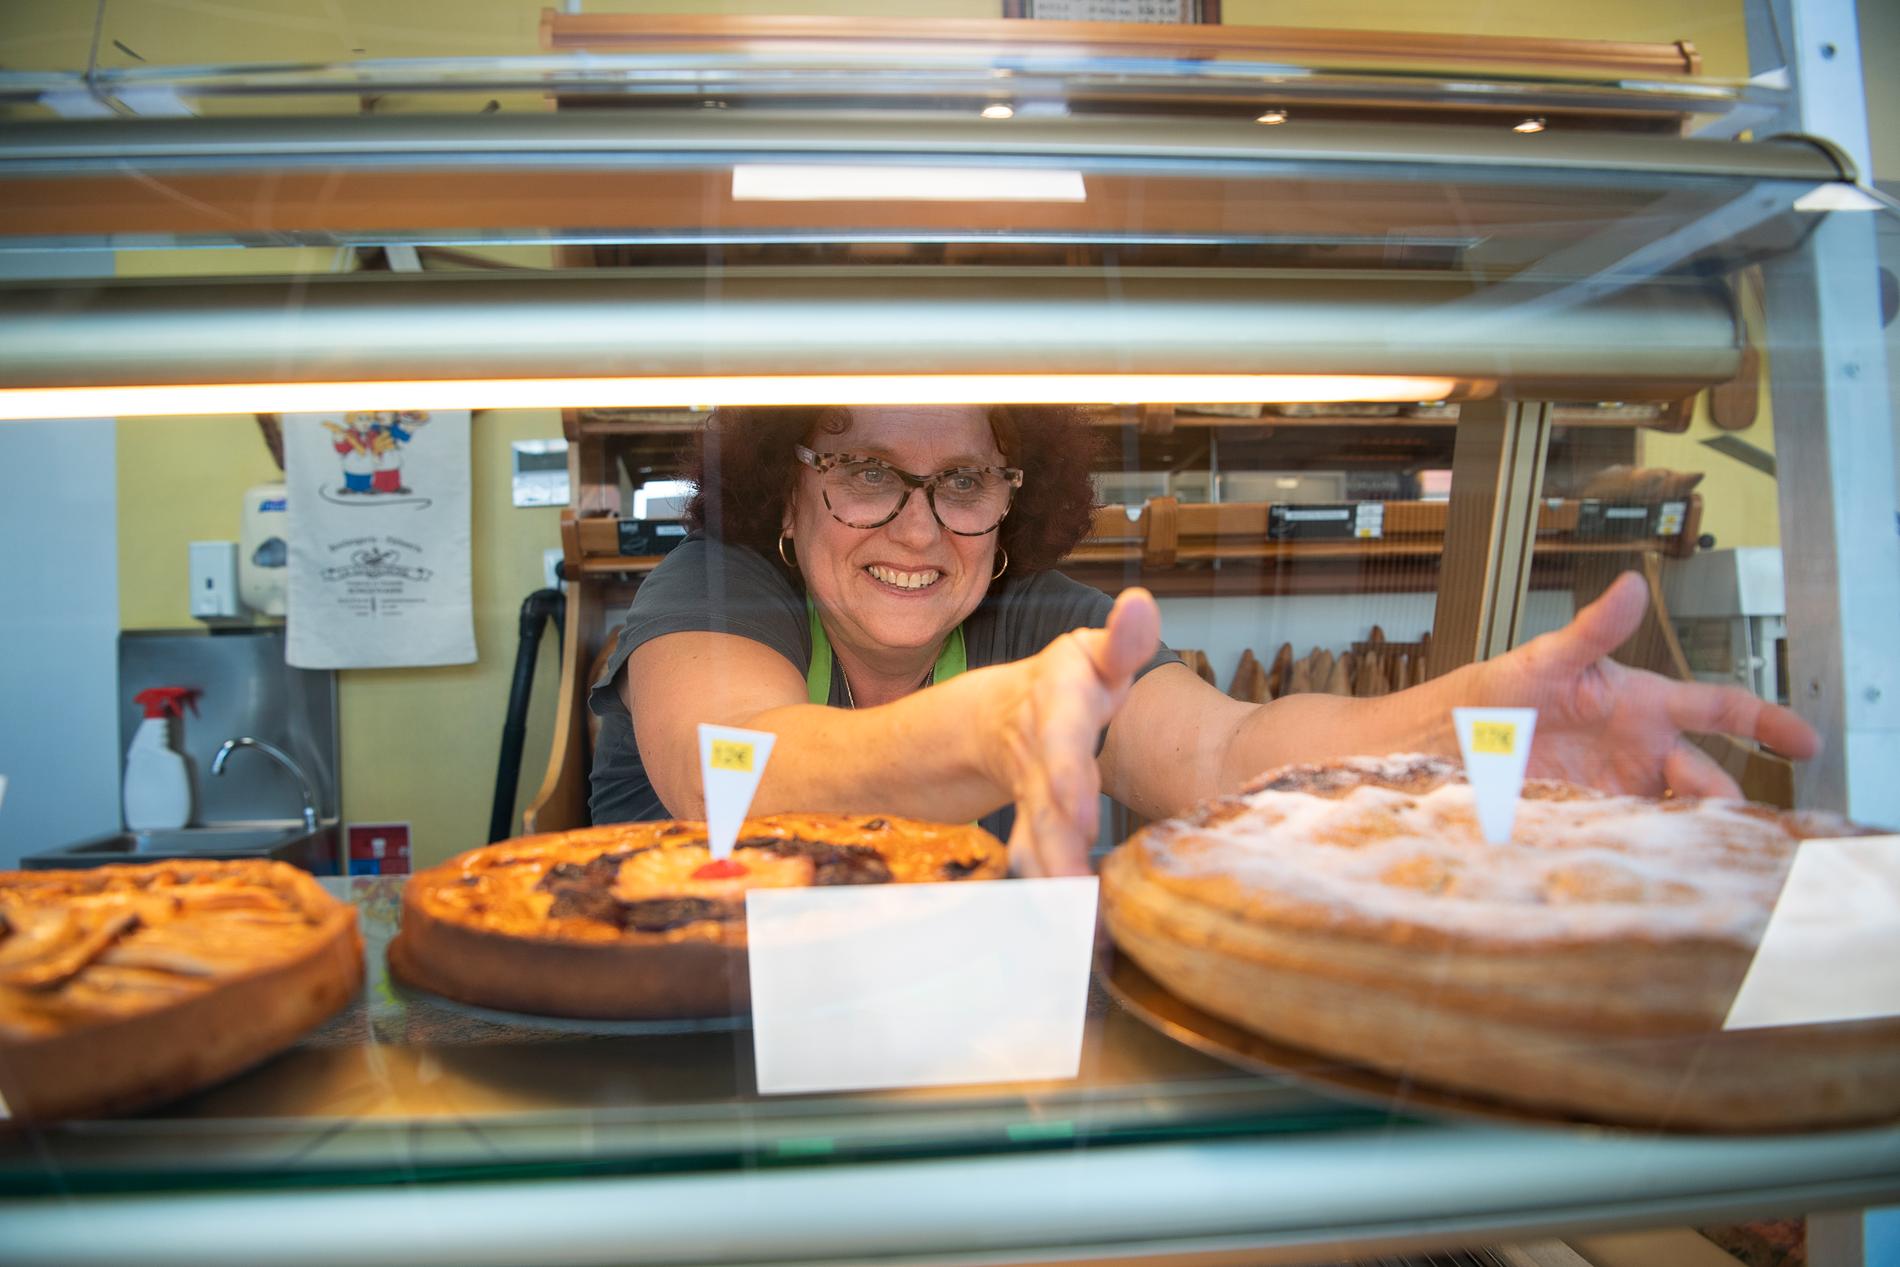 Caroline Holenstein oroar sig inte för att bageriet hon jobbar i ska tvingas stänga i vinter. ”Vi får helt enkelt anpassa vårt sätt att arbeta”, säger hon.